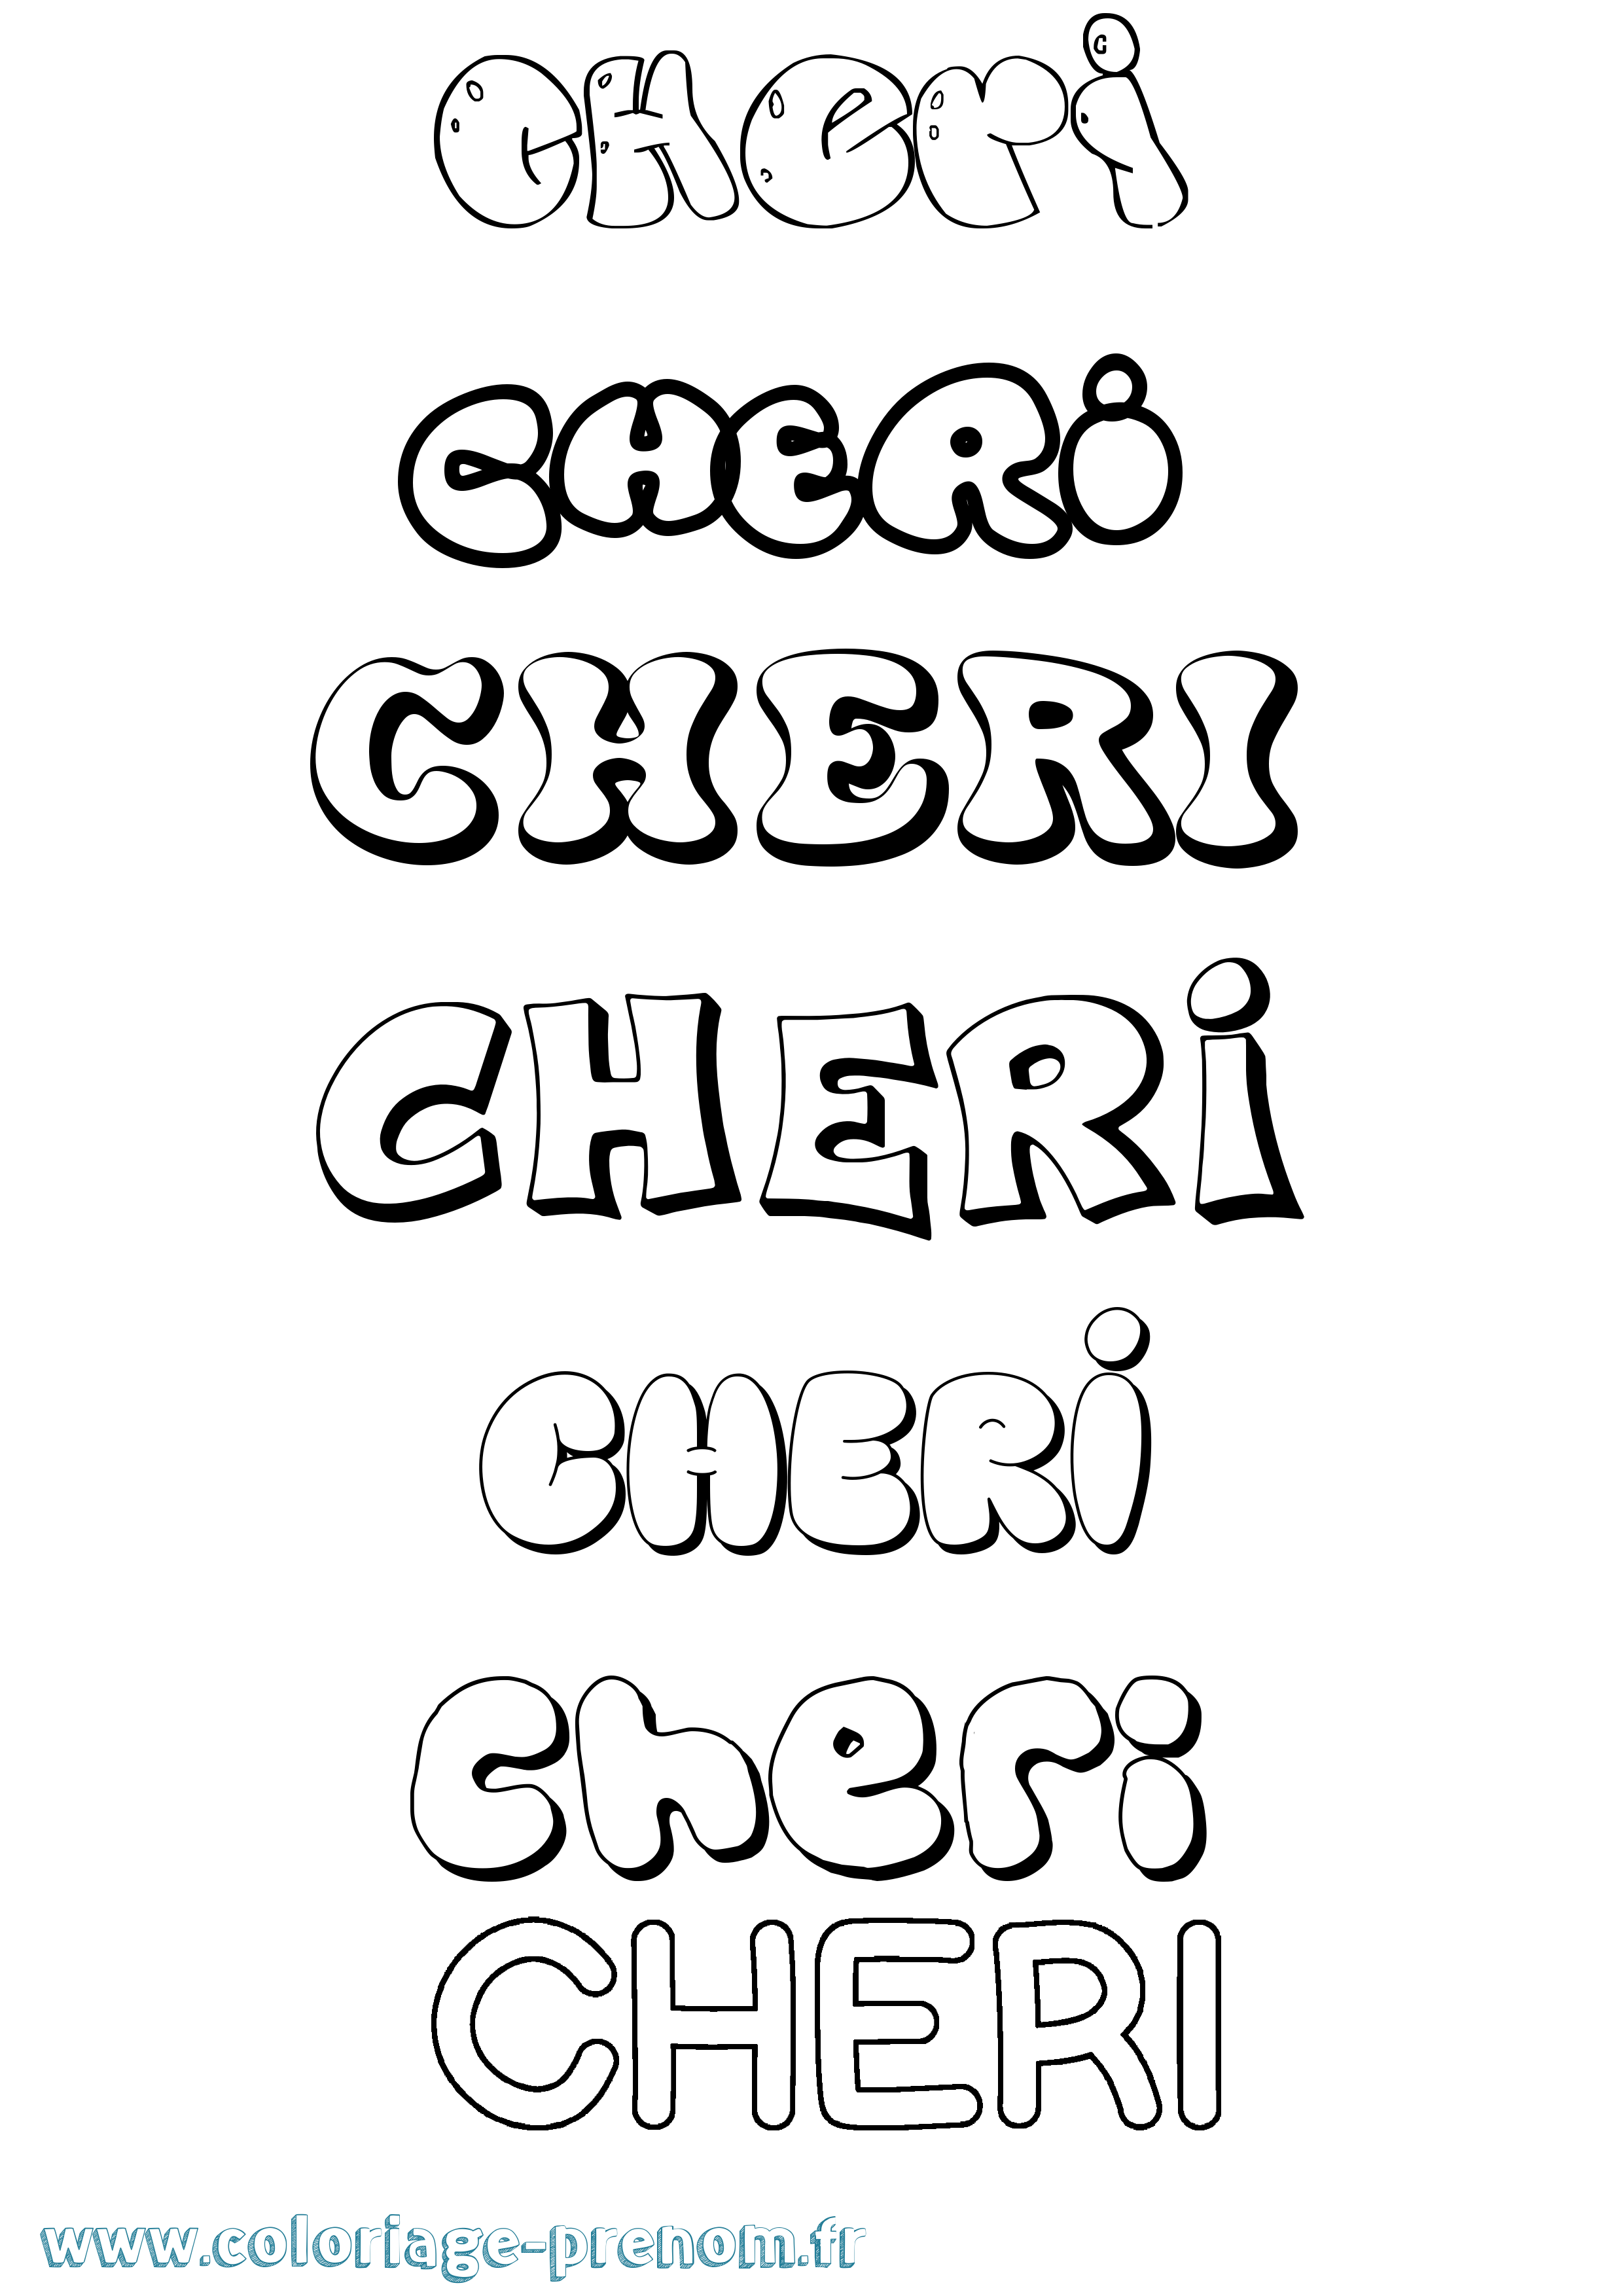 Coloriage prénom Cheri Bubble